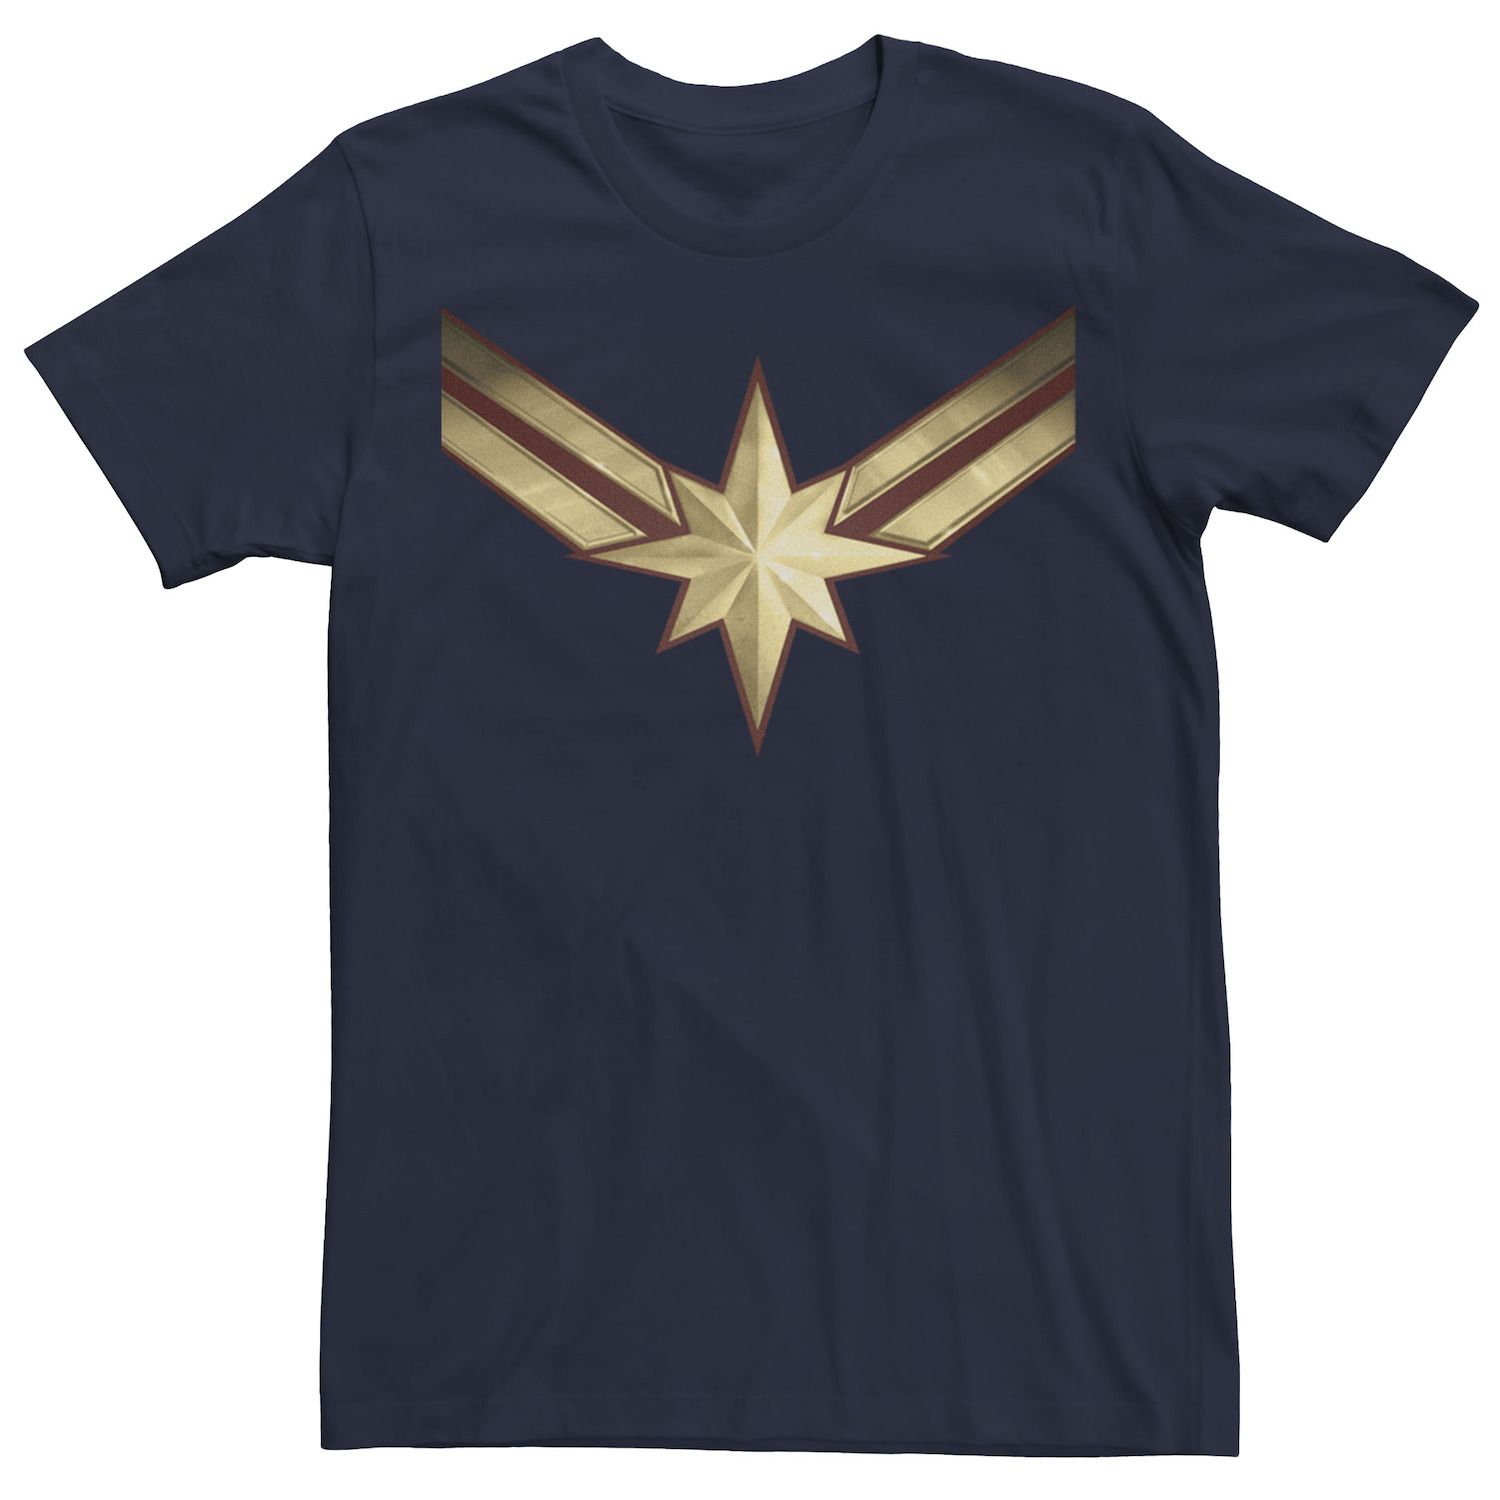 Мужская футболка Captain Movie с графическим рисунком золотистого и синего цвета с логотипом Marvel